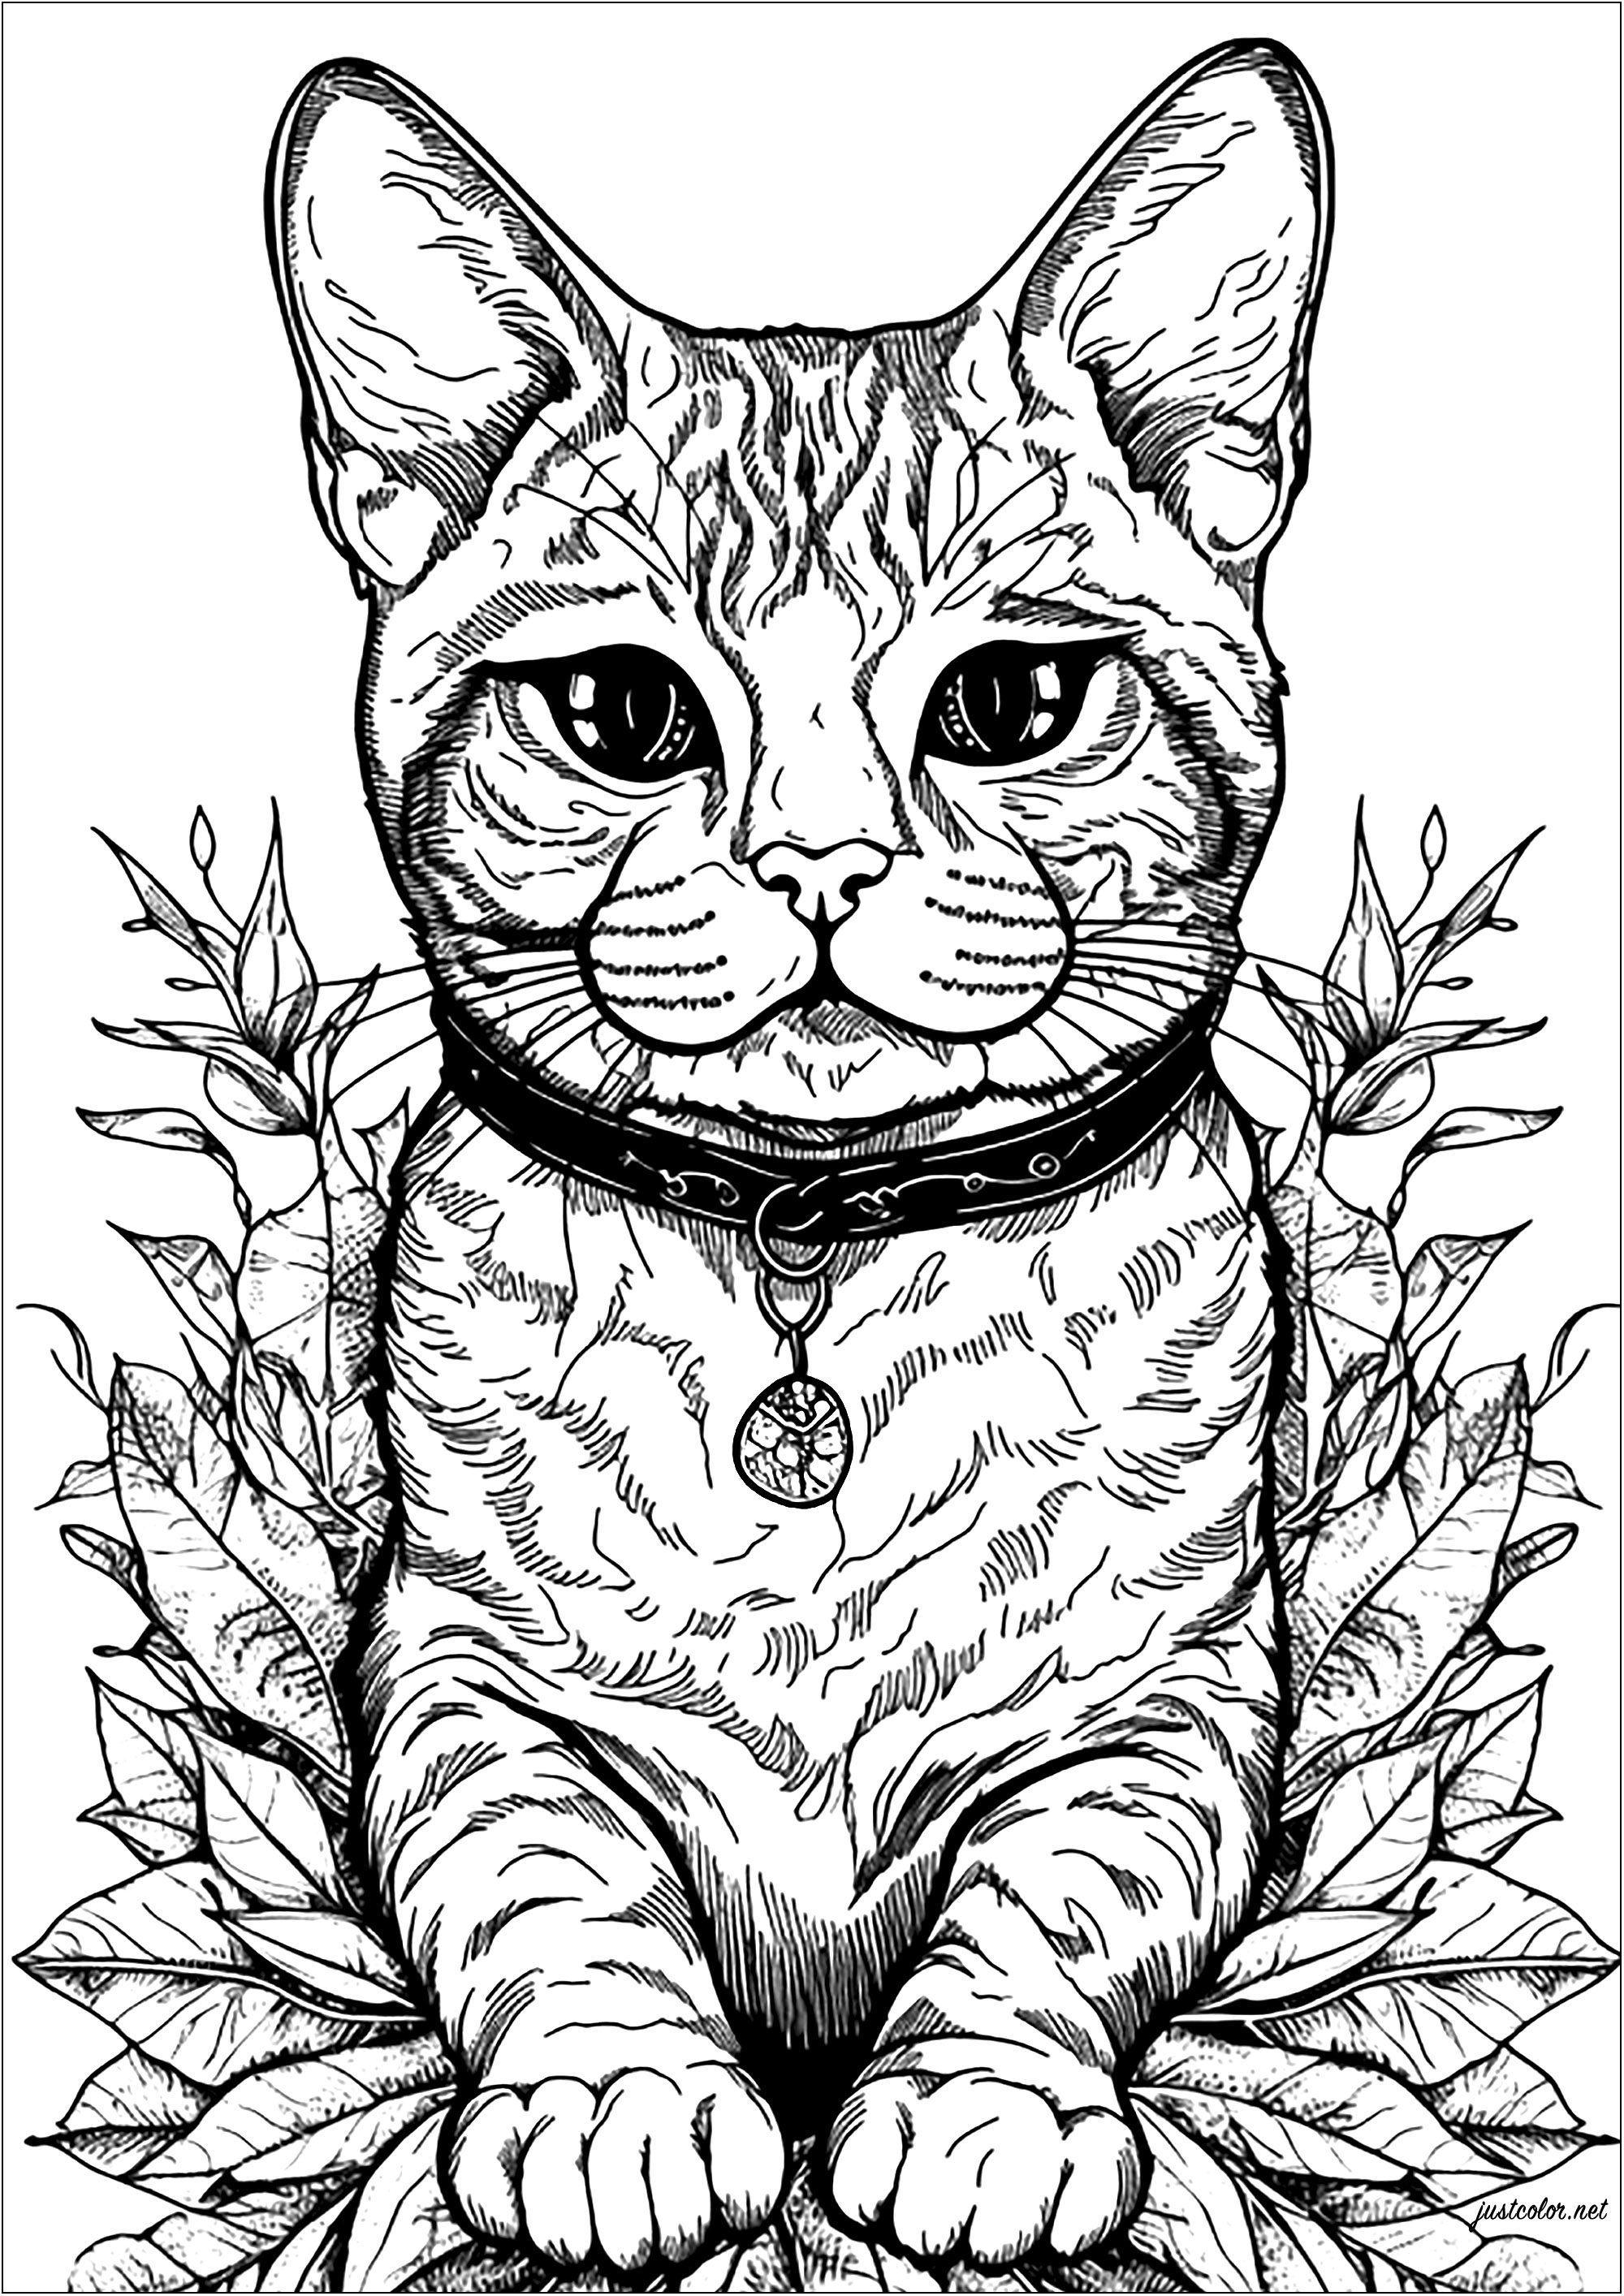 Joli chat et feuilles. Un coloriage assez simple mais très agréable à colorier